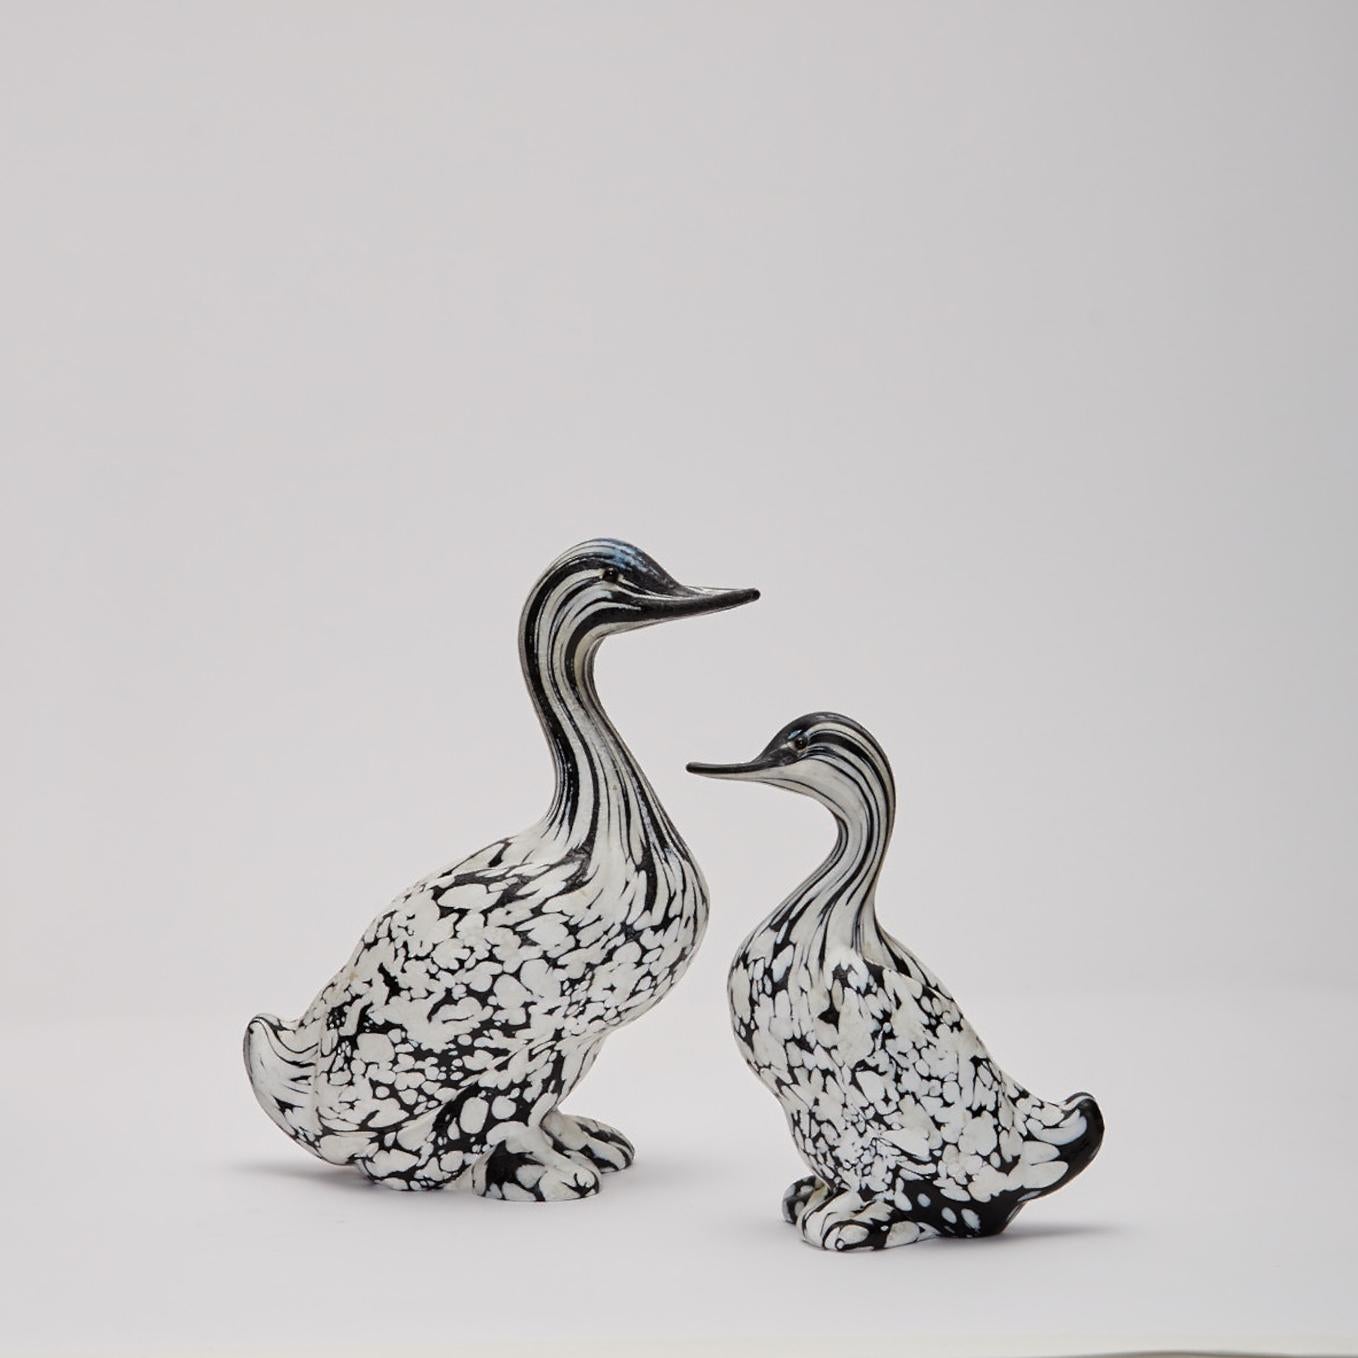 Paire de sculptures animales en noir et blanc d'Archimede Seguso (1909-1999), Italie, réalisées vers 1970, comprenant deux grands canards, en verre opaque massif.
Archimede Seguso est né sur l'île de Murano. L'héritage de sa famille en tant